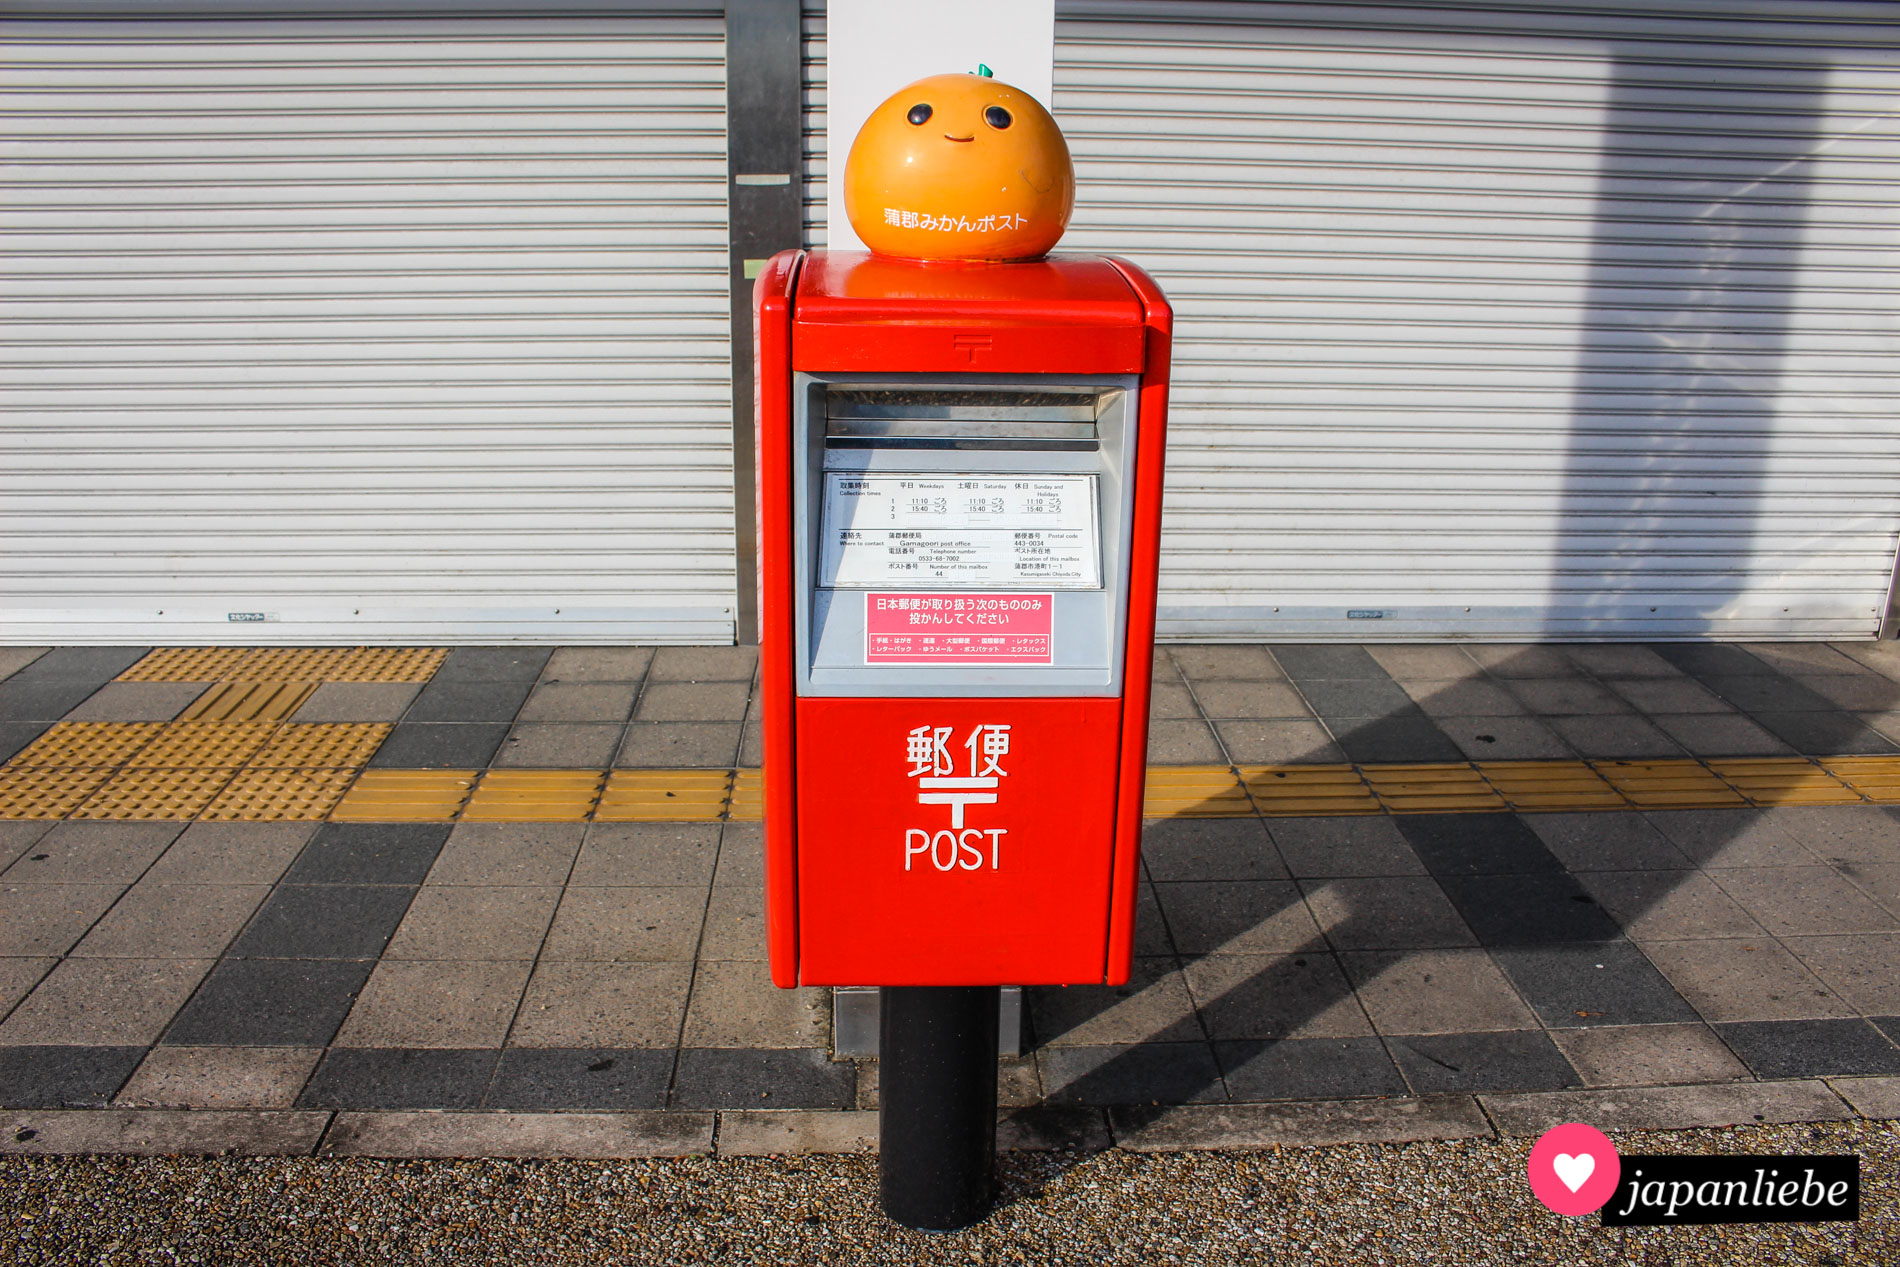 Dieser Postkasten in Gamagori hat obenauf das Maskottchen der Stadt: Mikan-chan.